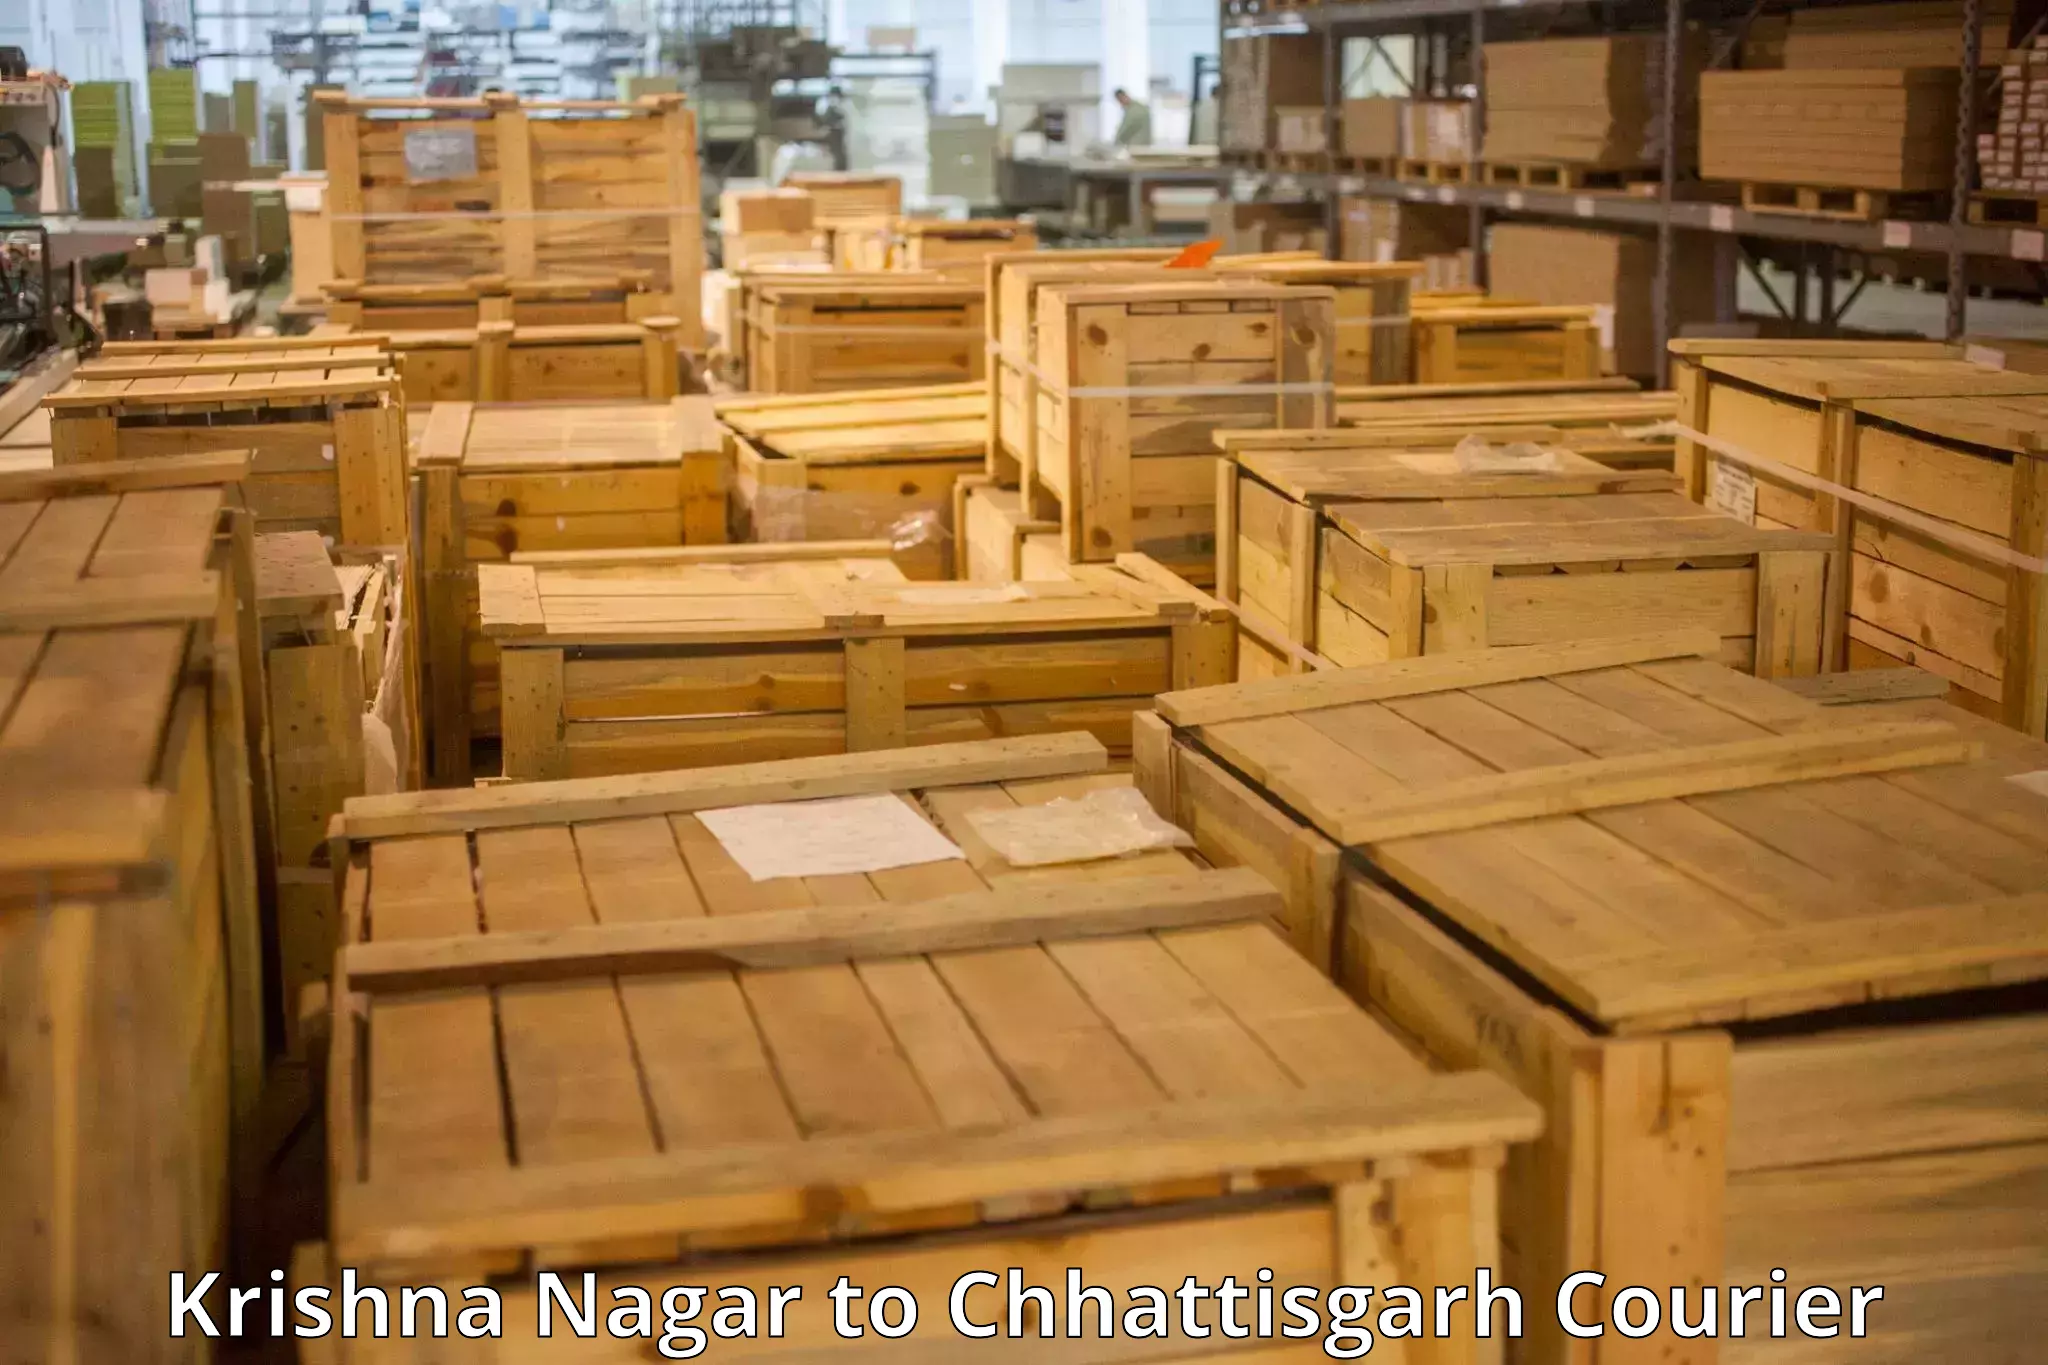 Baggage transport estimate Krishna Nagar to Bastar